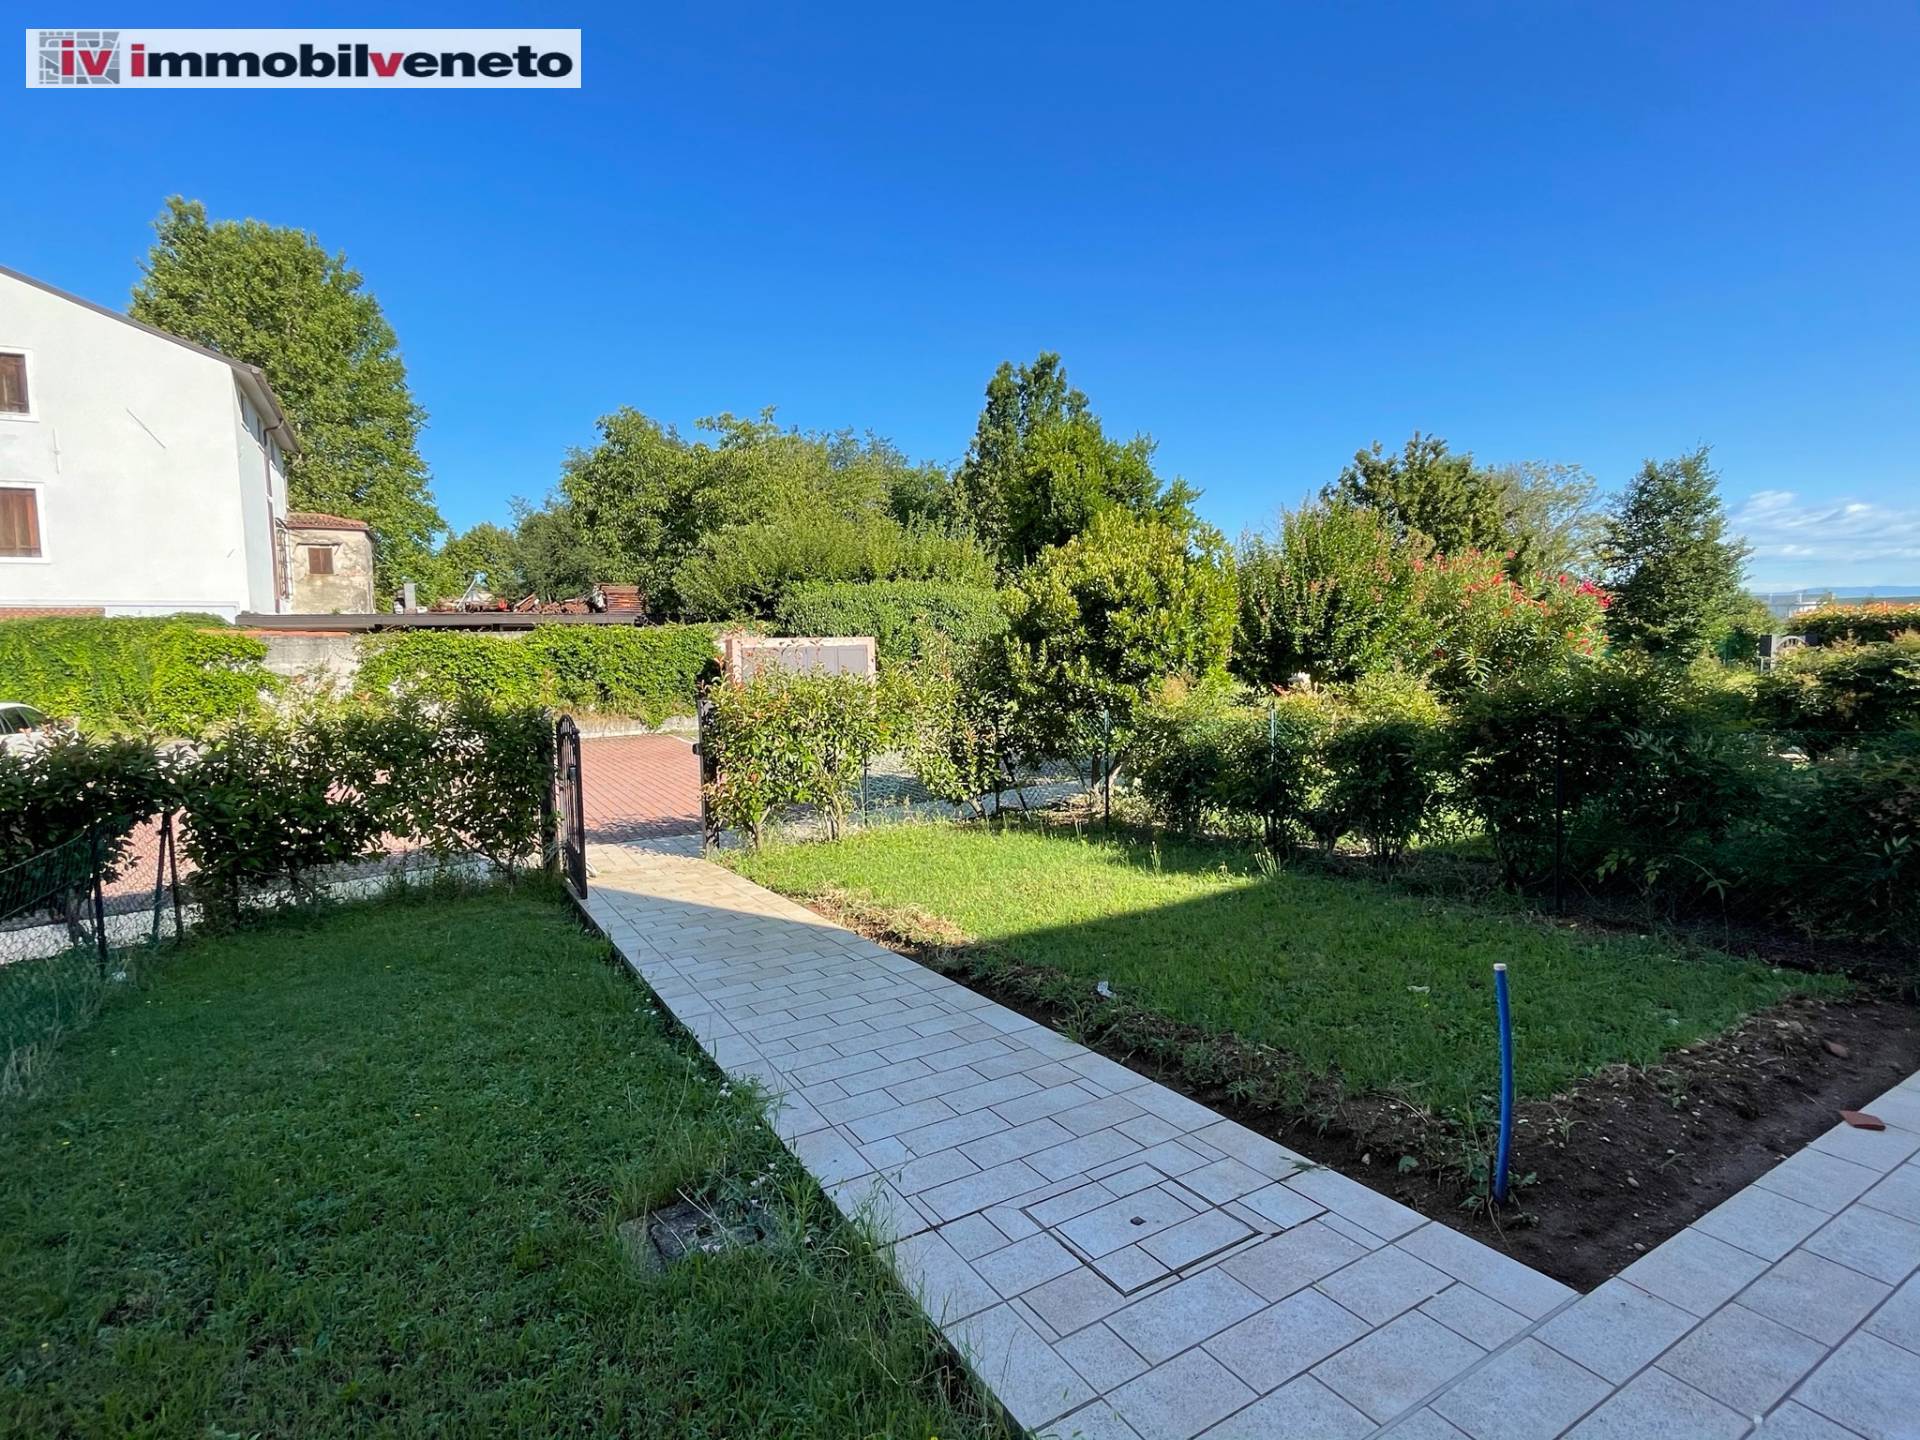 Villa a Schiera in vendita a Sarego, 8 locali, zona do, prezzo € 105.000 | PortaleAgenzieImmobiliari.it